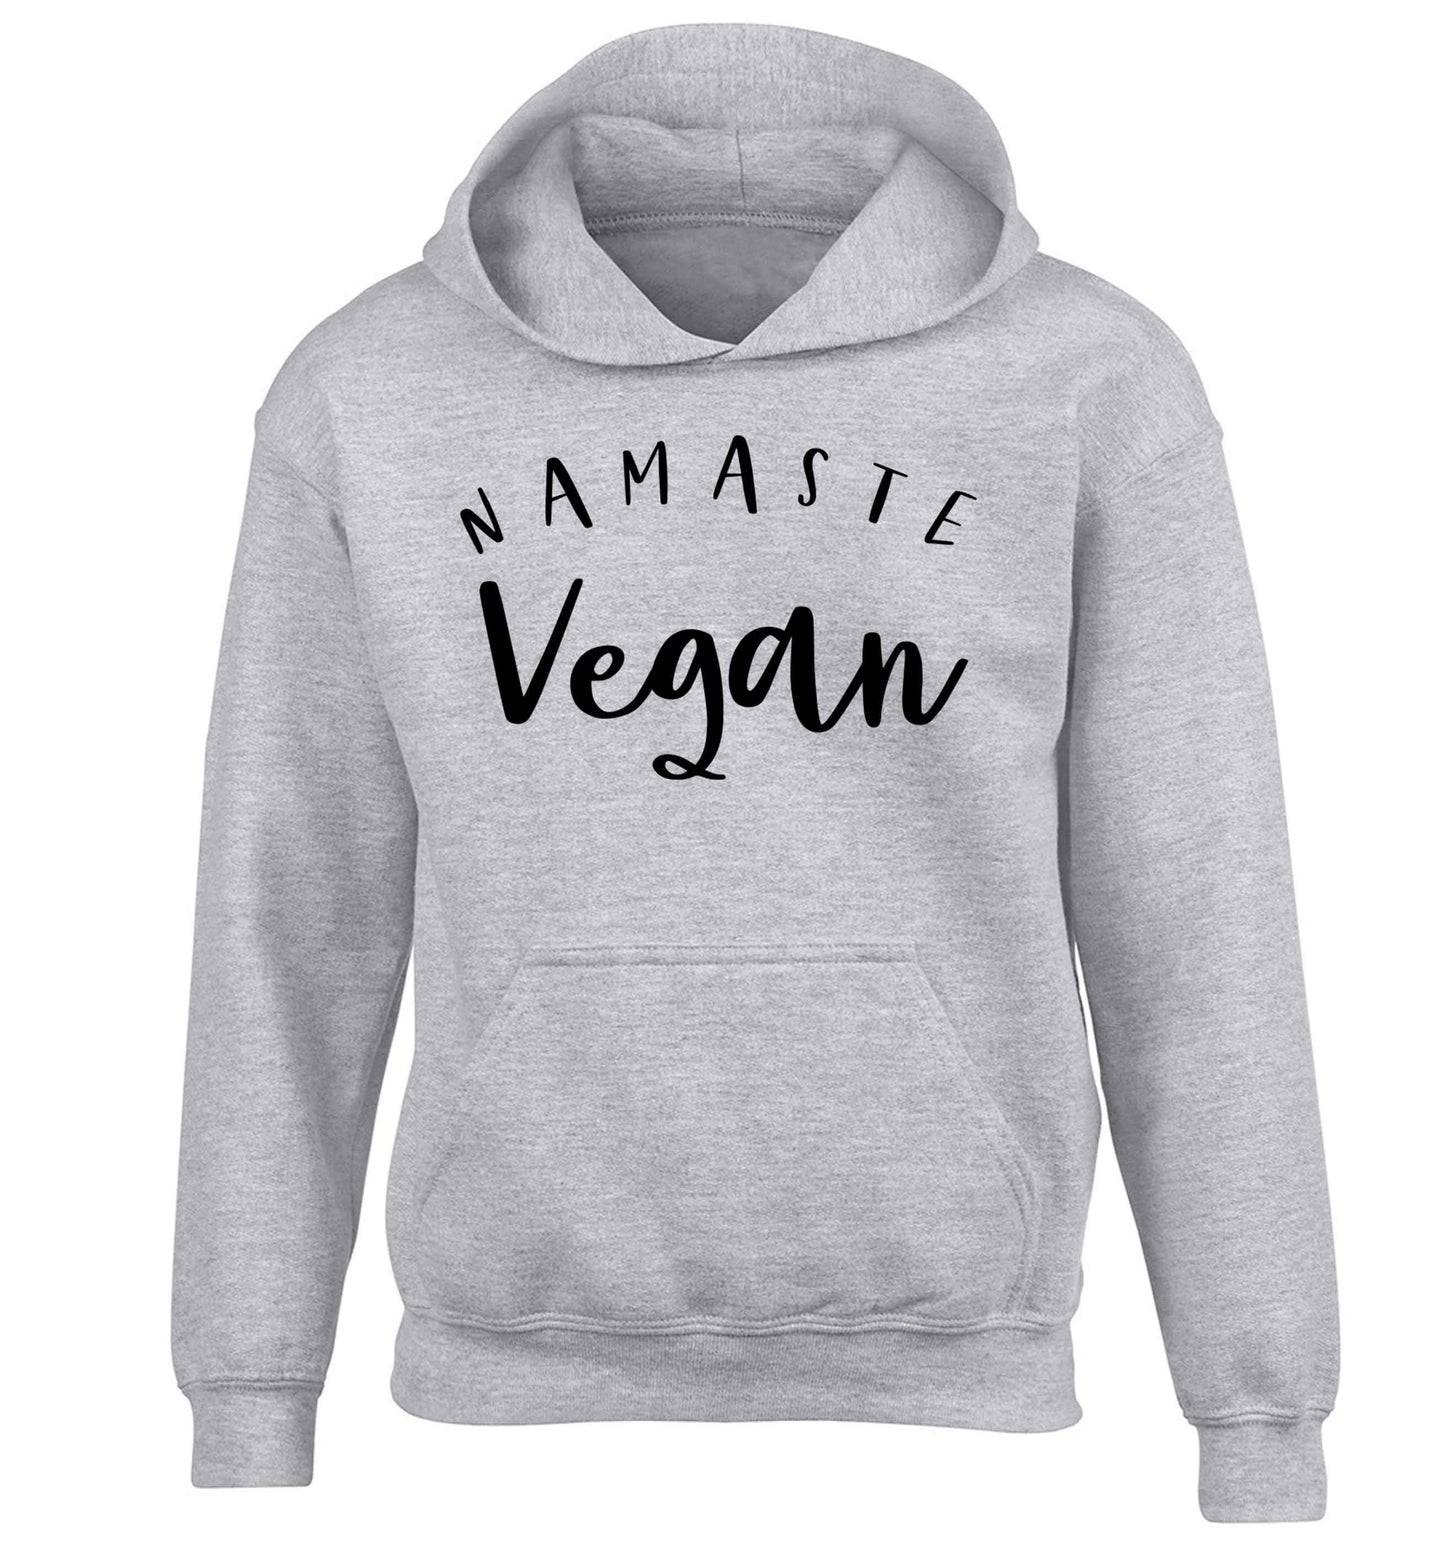 Namaste vegan children's grey hoodie 12-13 Years